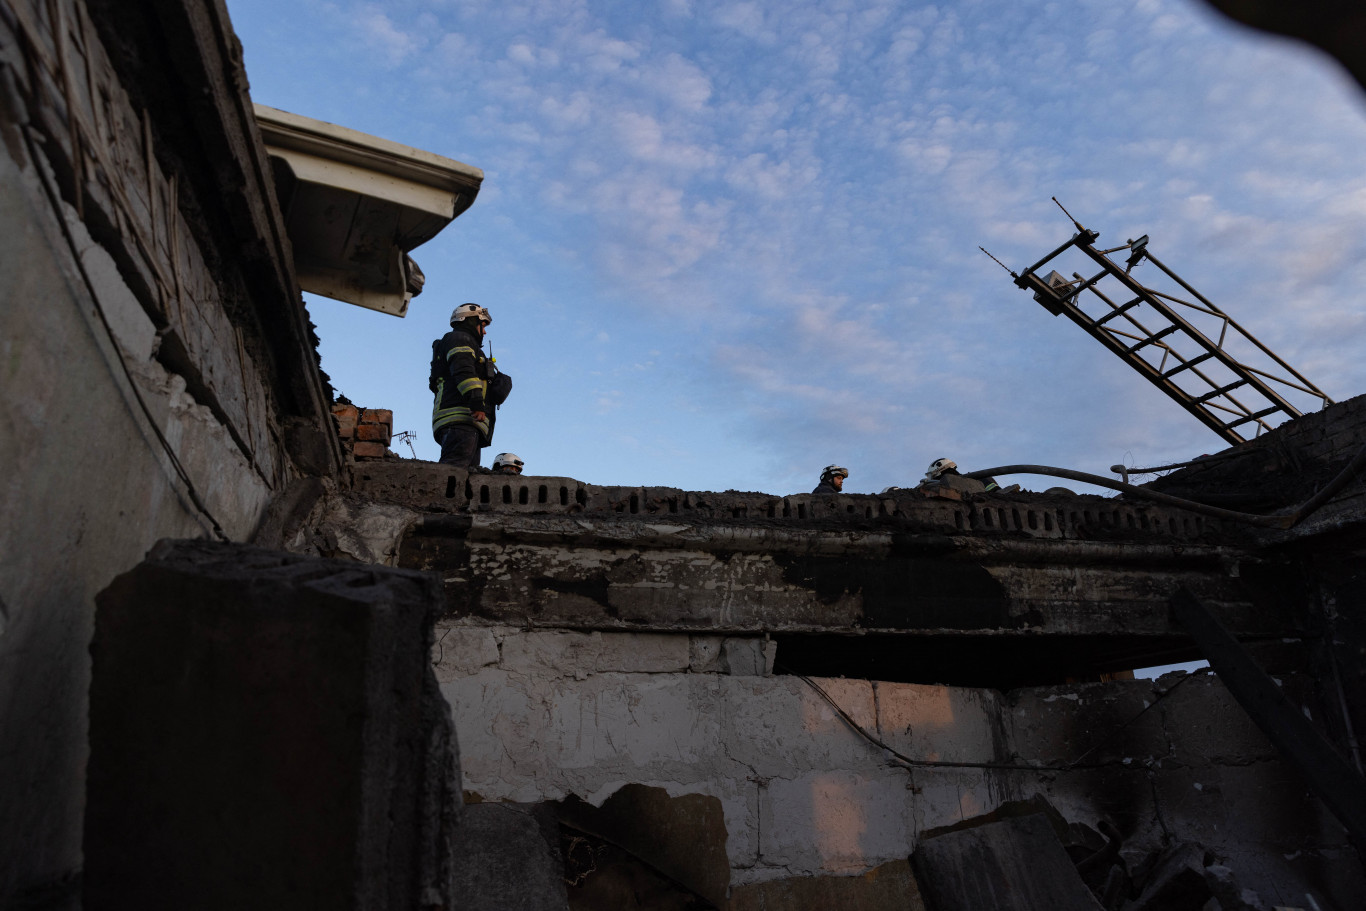 Ukrajna energetikai létesítményeket támadott 8 orosz régióban